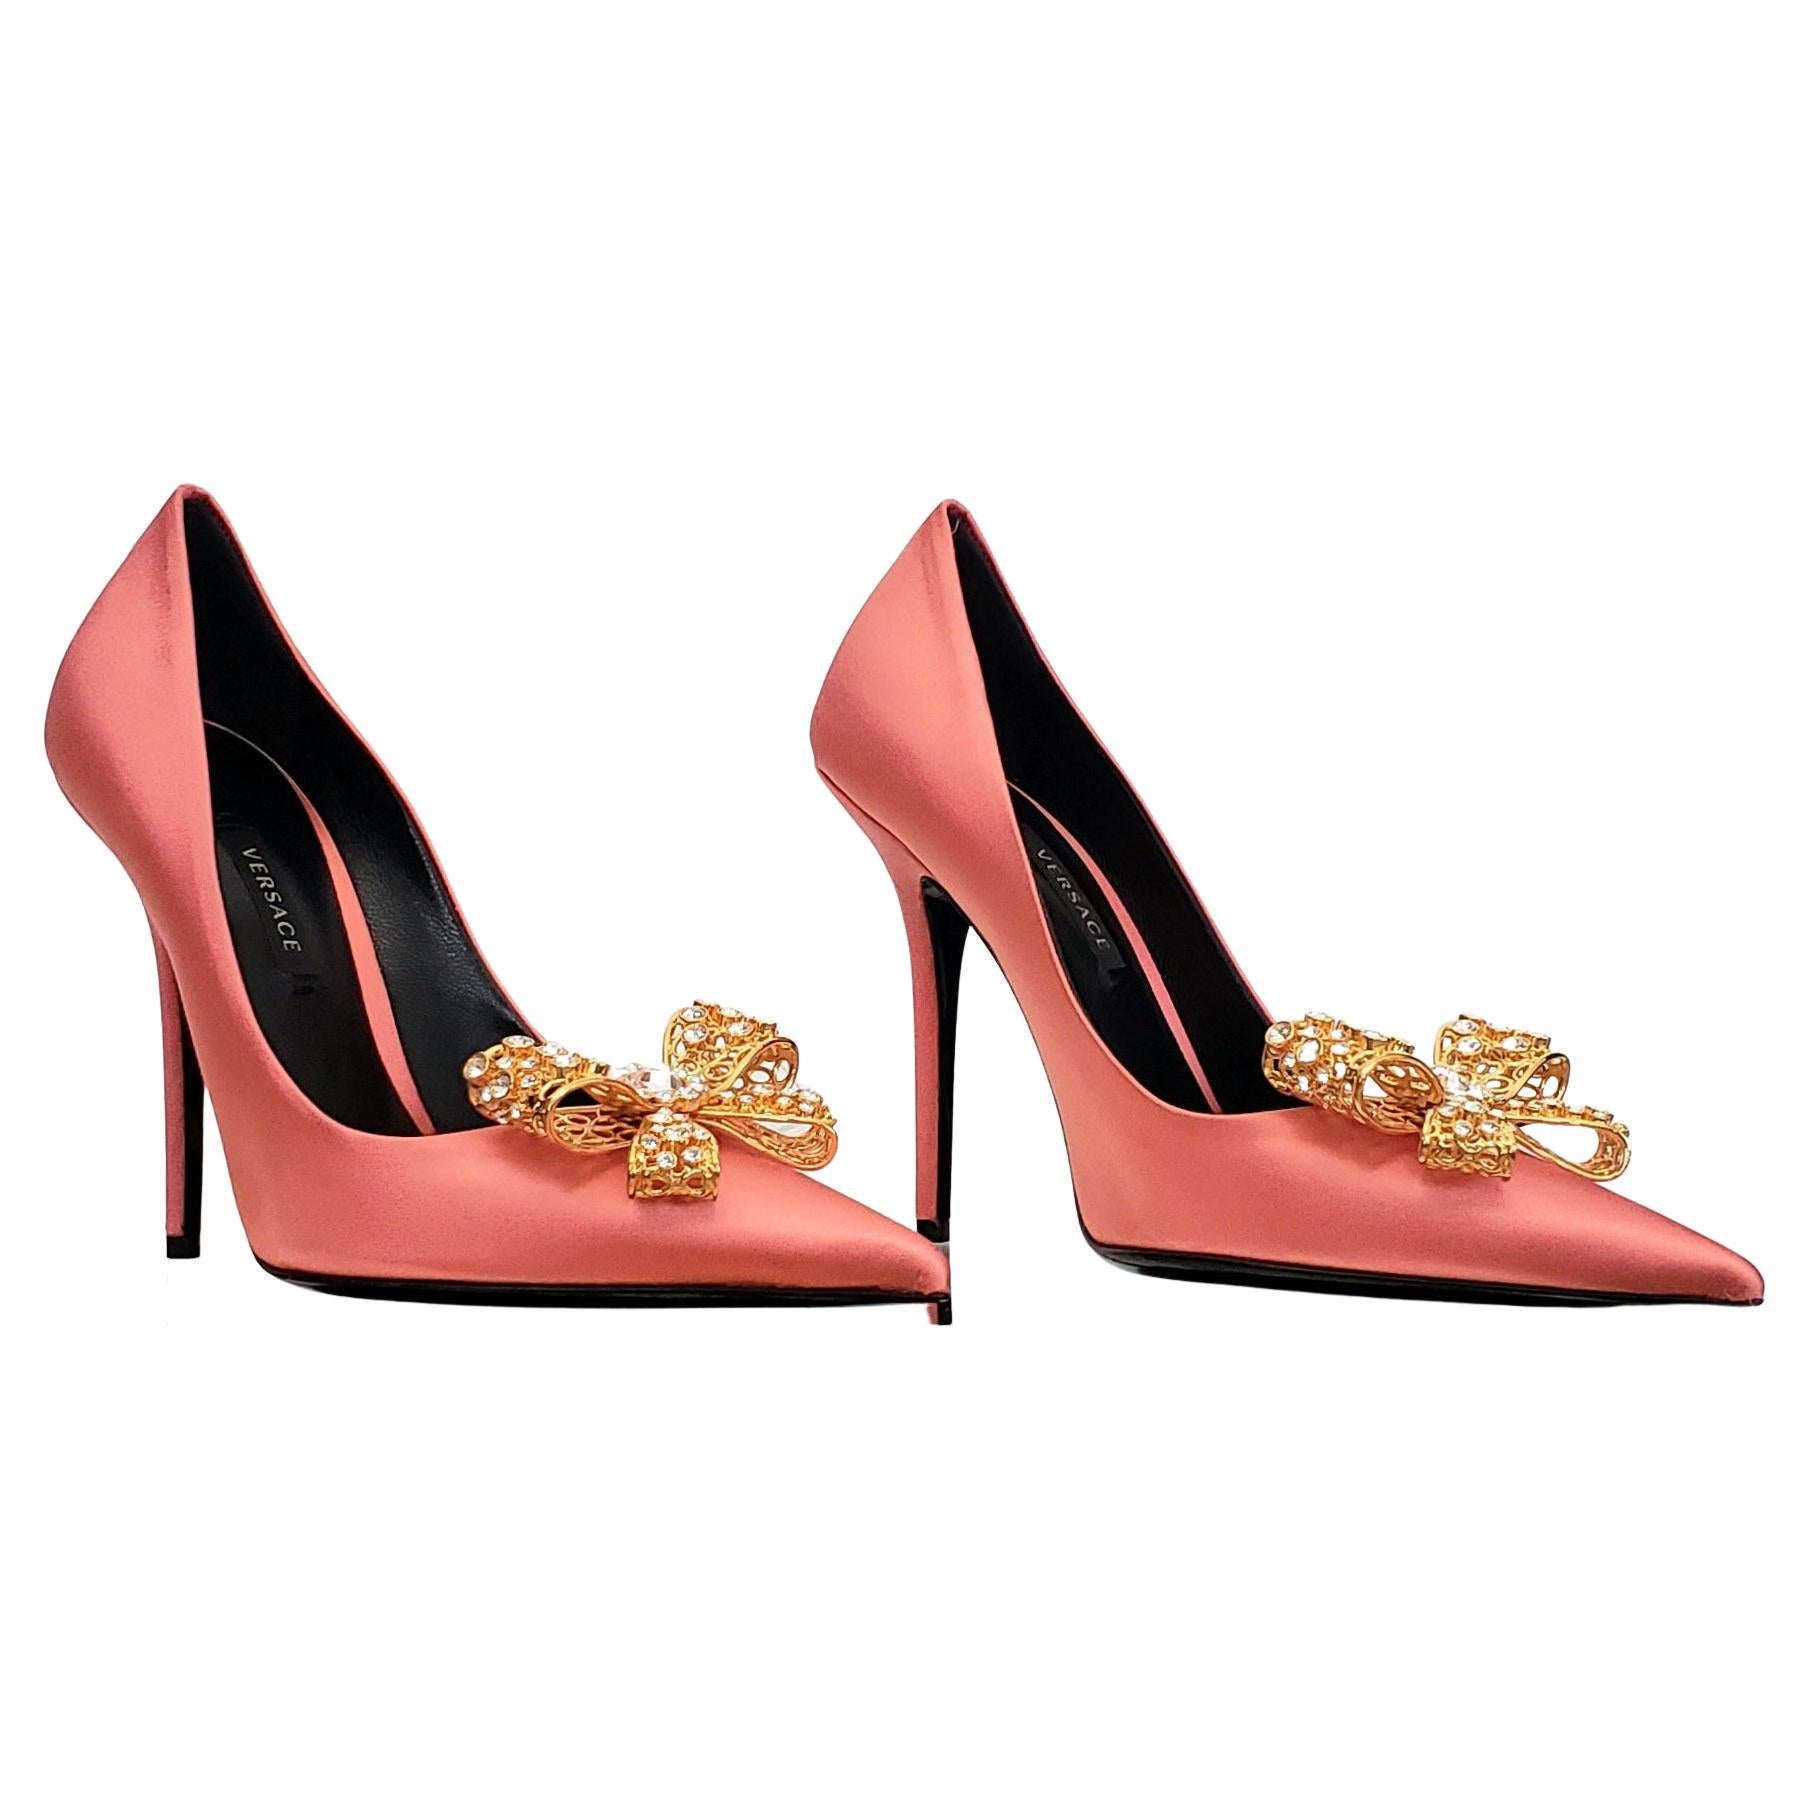 Chaussures de sport Versace 2019 ROSE SATIN ornées de cristaux dorés, taille 38 - 8